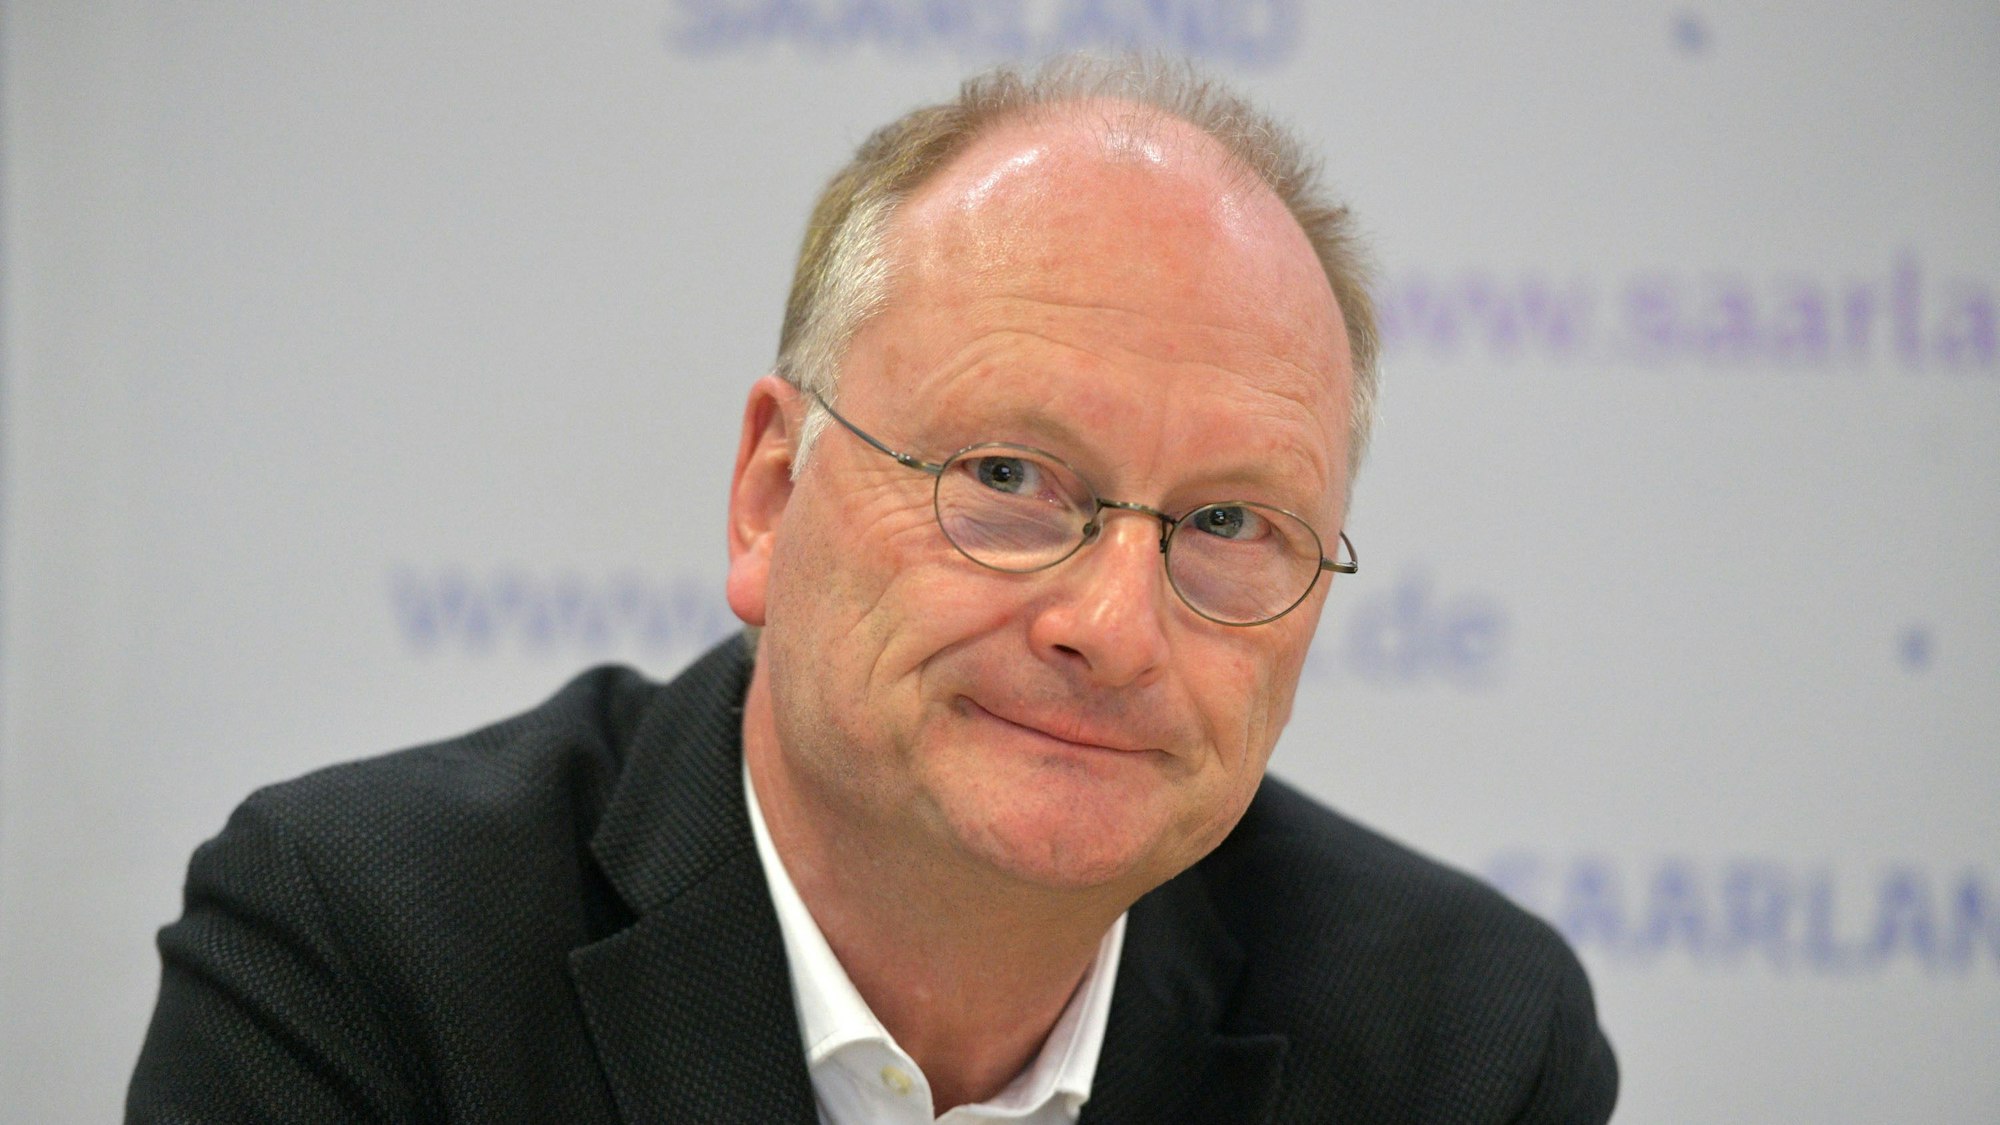 Sven Plöger, ARD-Wettermoderator und Diplom-Meteorologe, stellt unter anderem in der Tagesschau, in den Tagesthemen sowie in der Aktuellen Stunde des WDR regelmäßig das Wetter vor. (Archivbild)